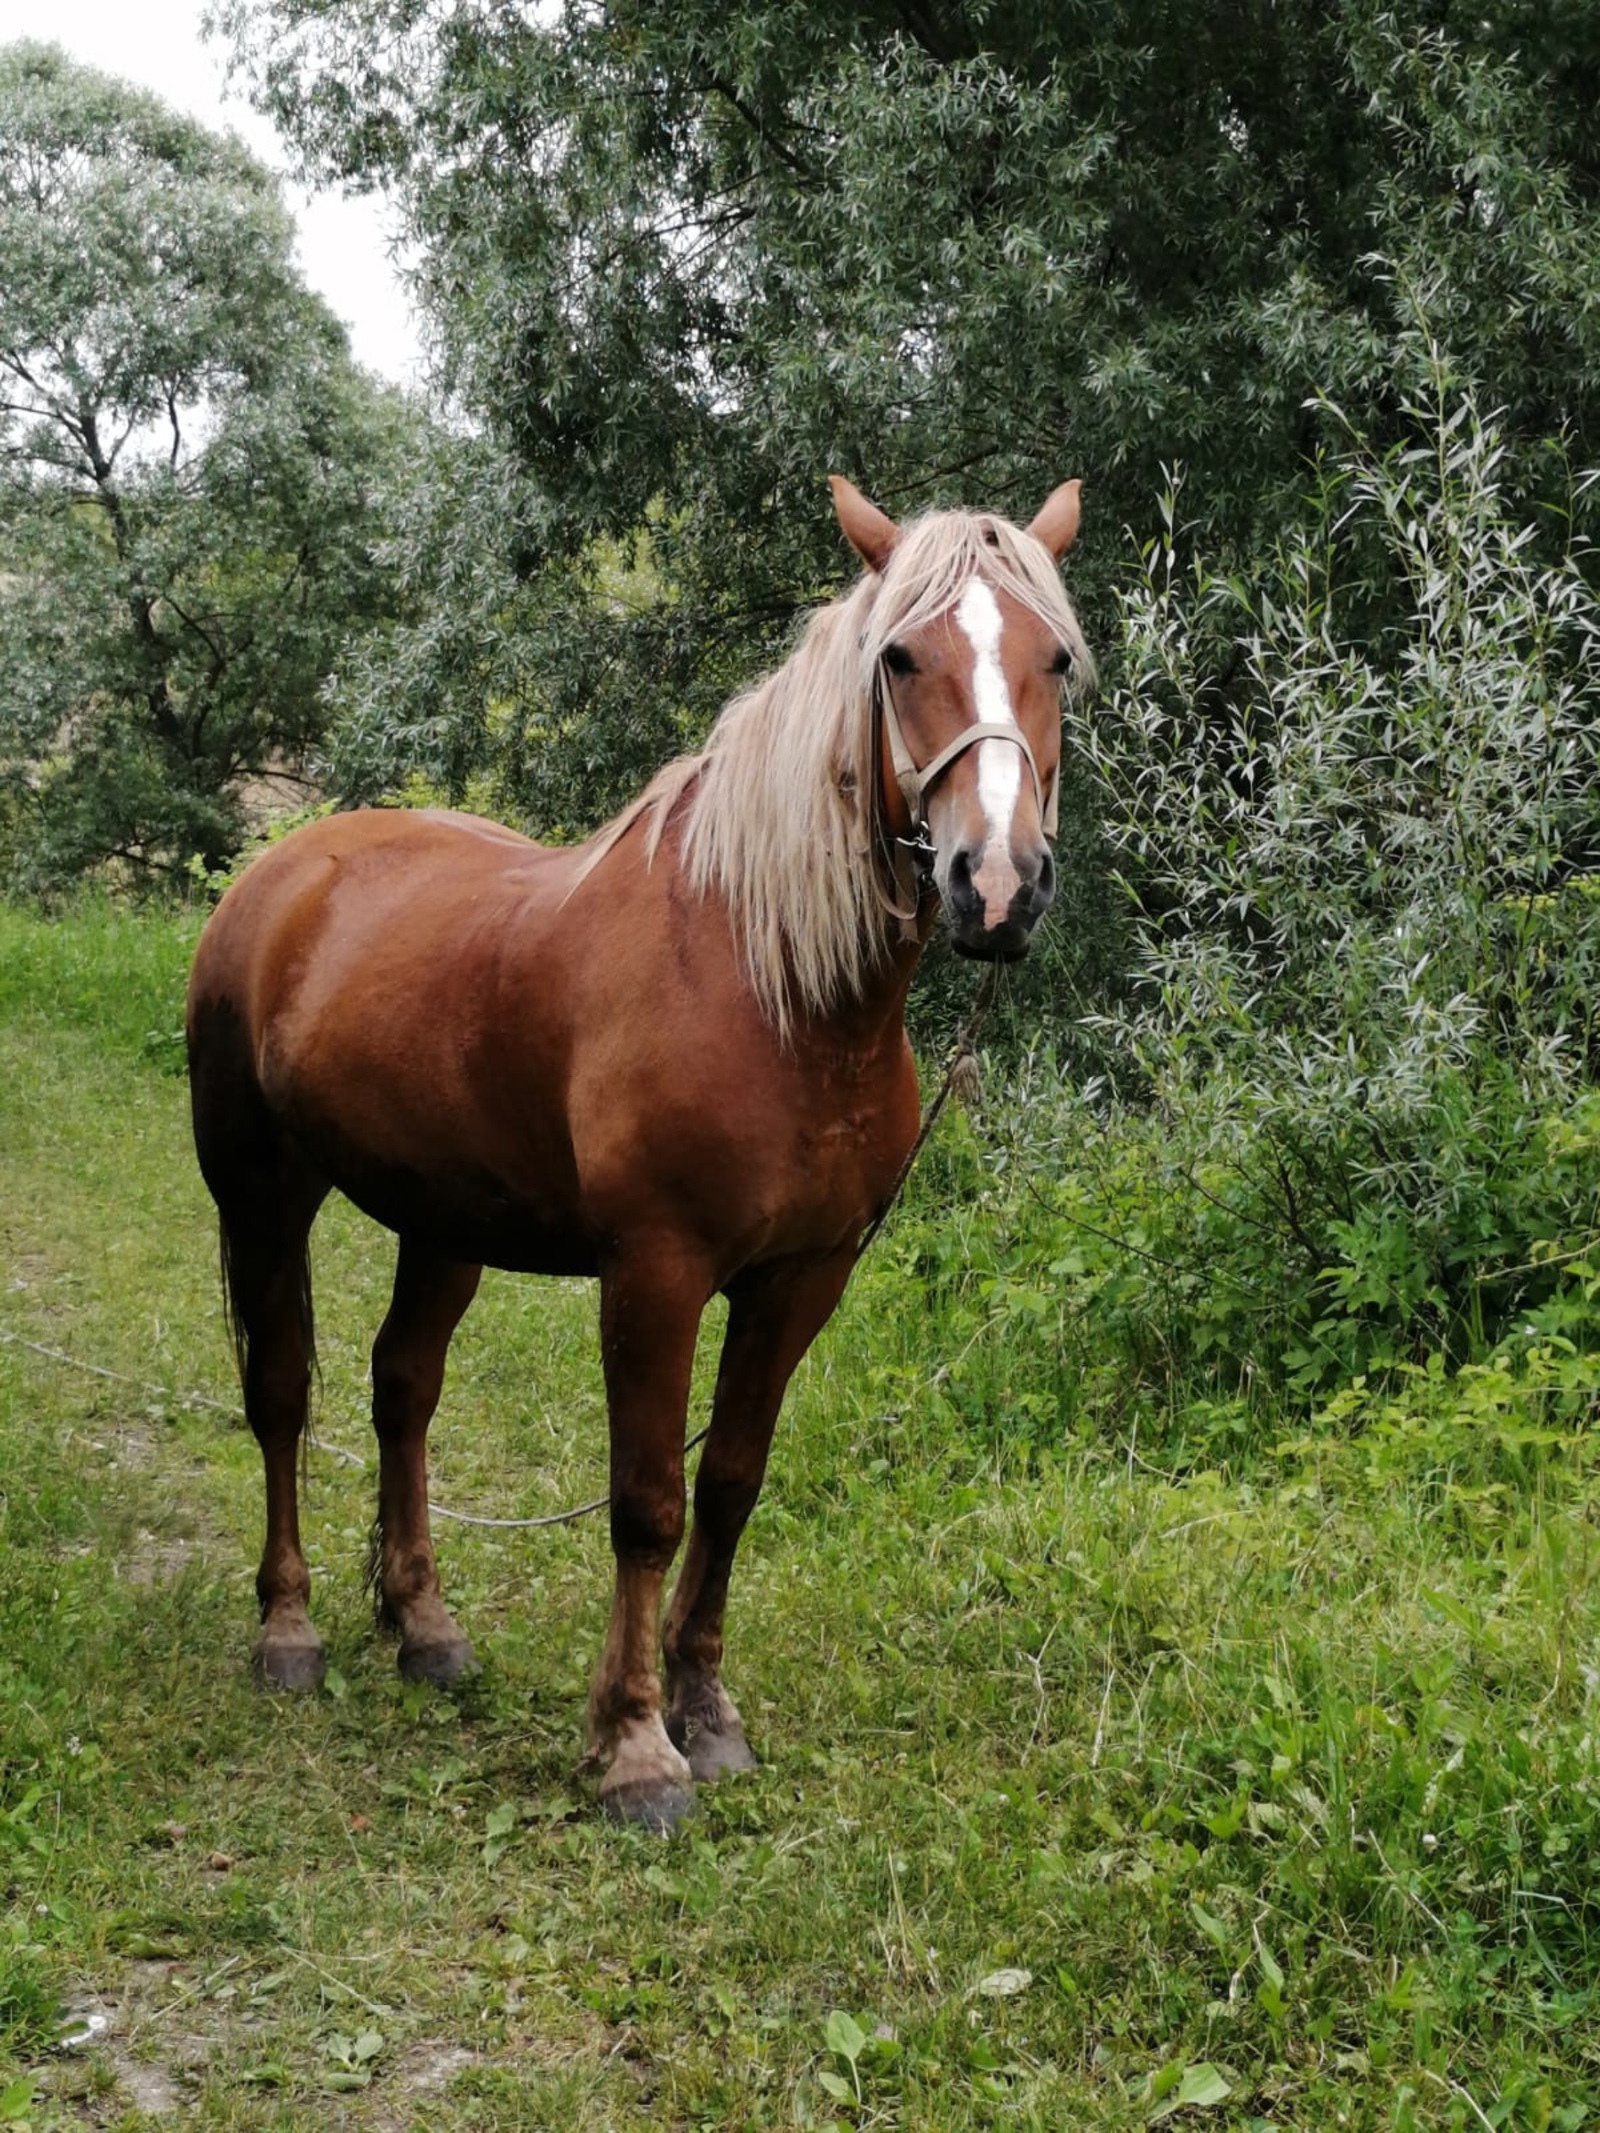 Нурзия Хасанова  Лучница из Узбекистана отметила доброту лошадей башкирской породы